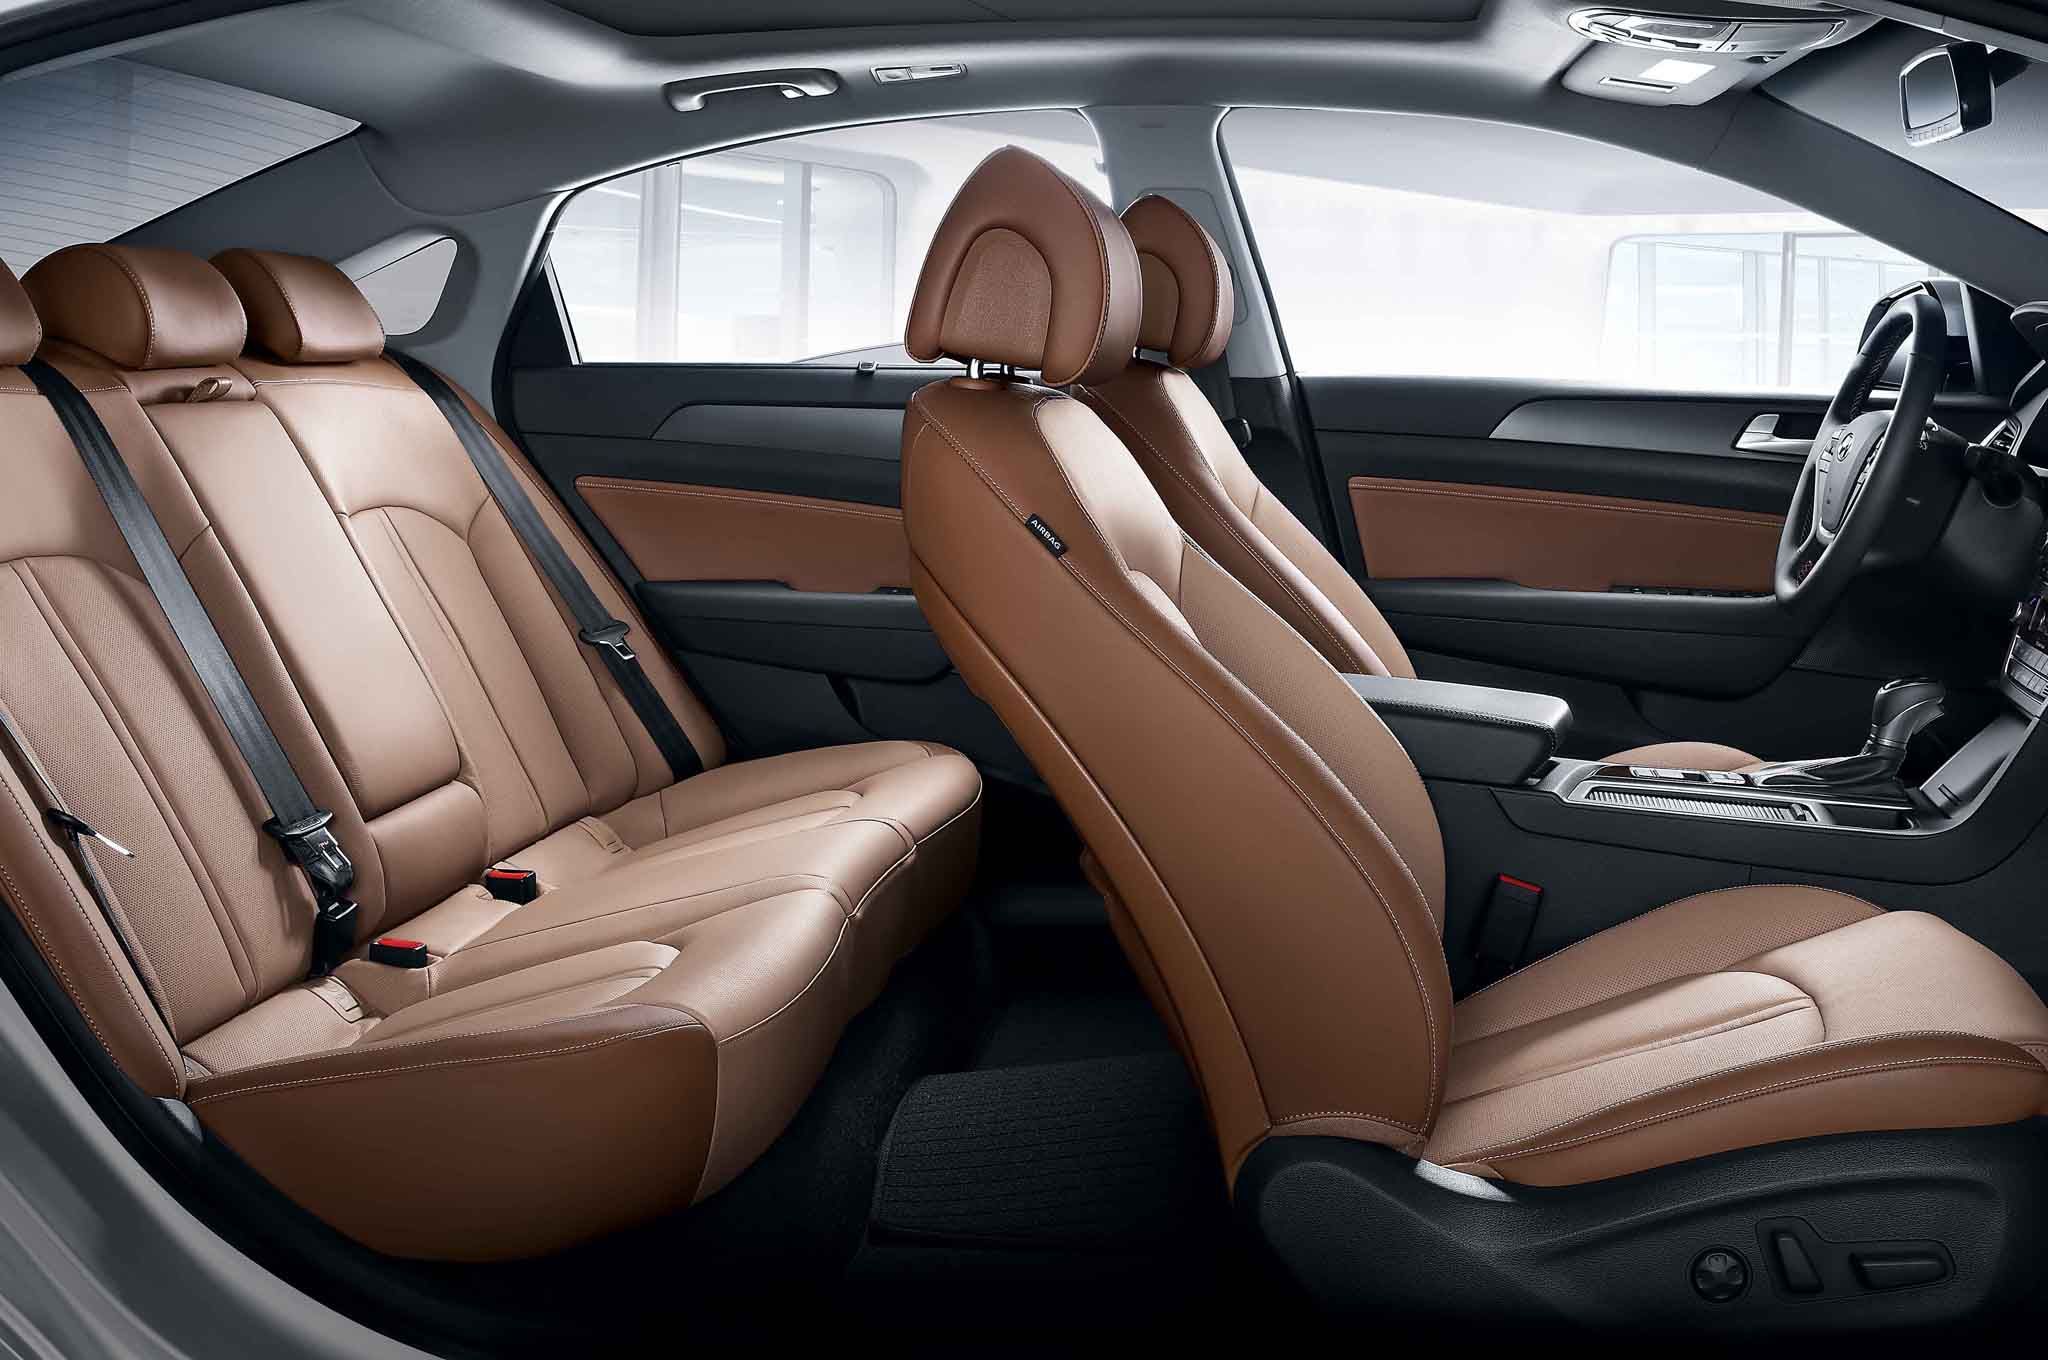 2015 Hyundai Sonata Interior Seats (View 6 of 11)